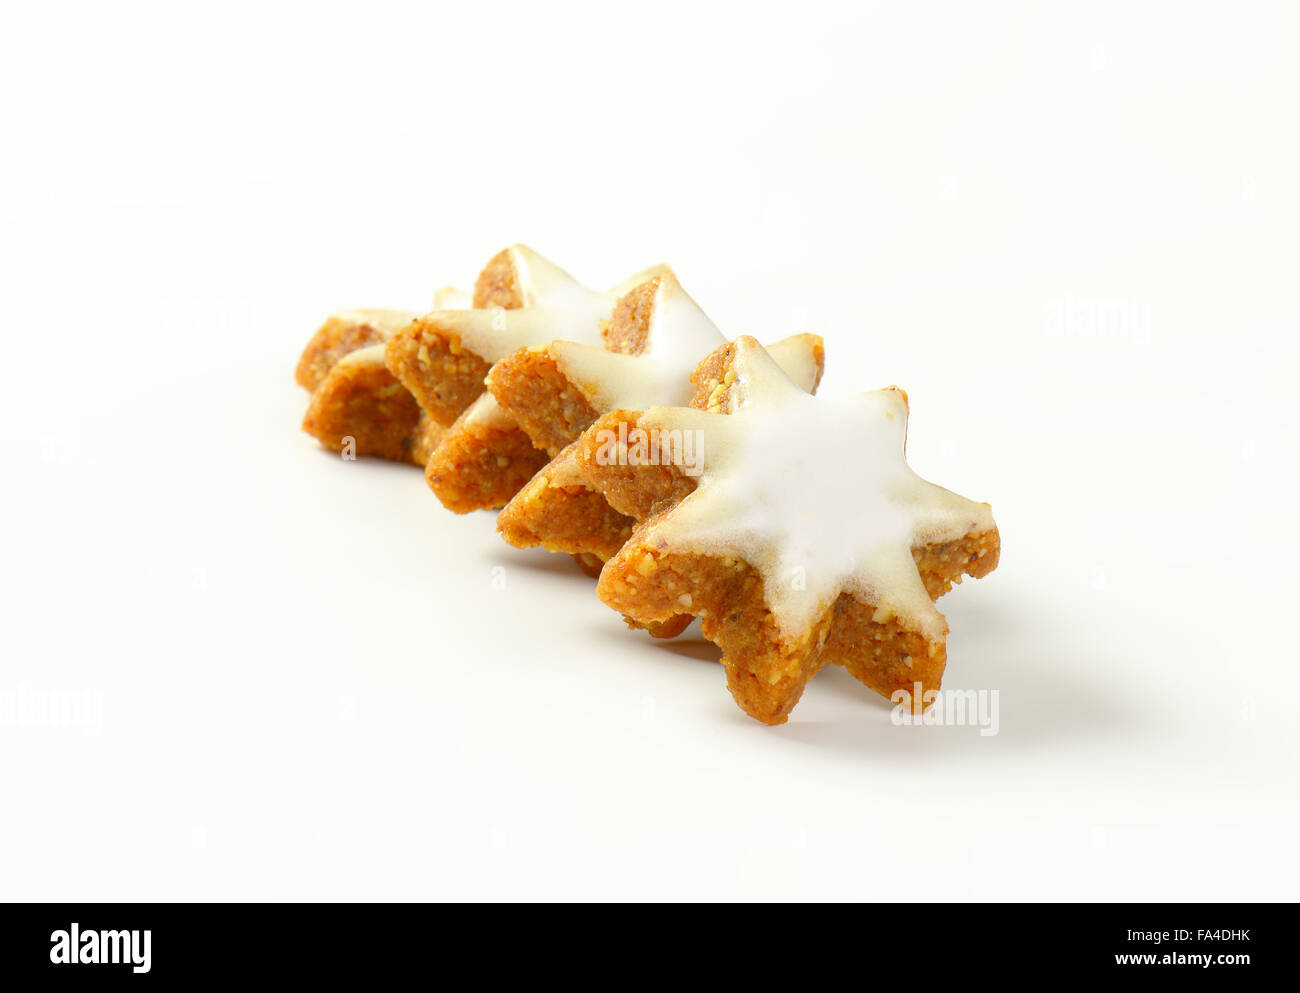 Biscotti Di Natale Zimtsterne.Zimtsterne Cannella Stelle Tedesco Tradizionali Biscotti Di Natale Foto Stock Alamy